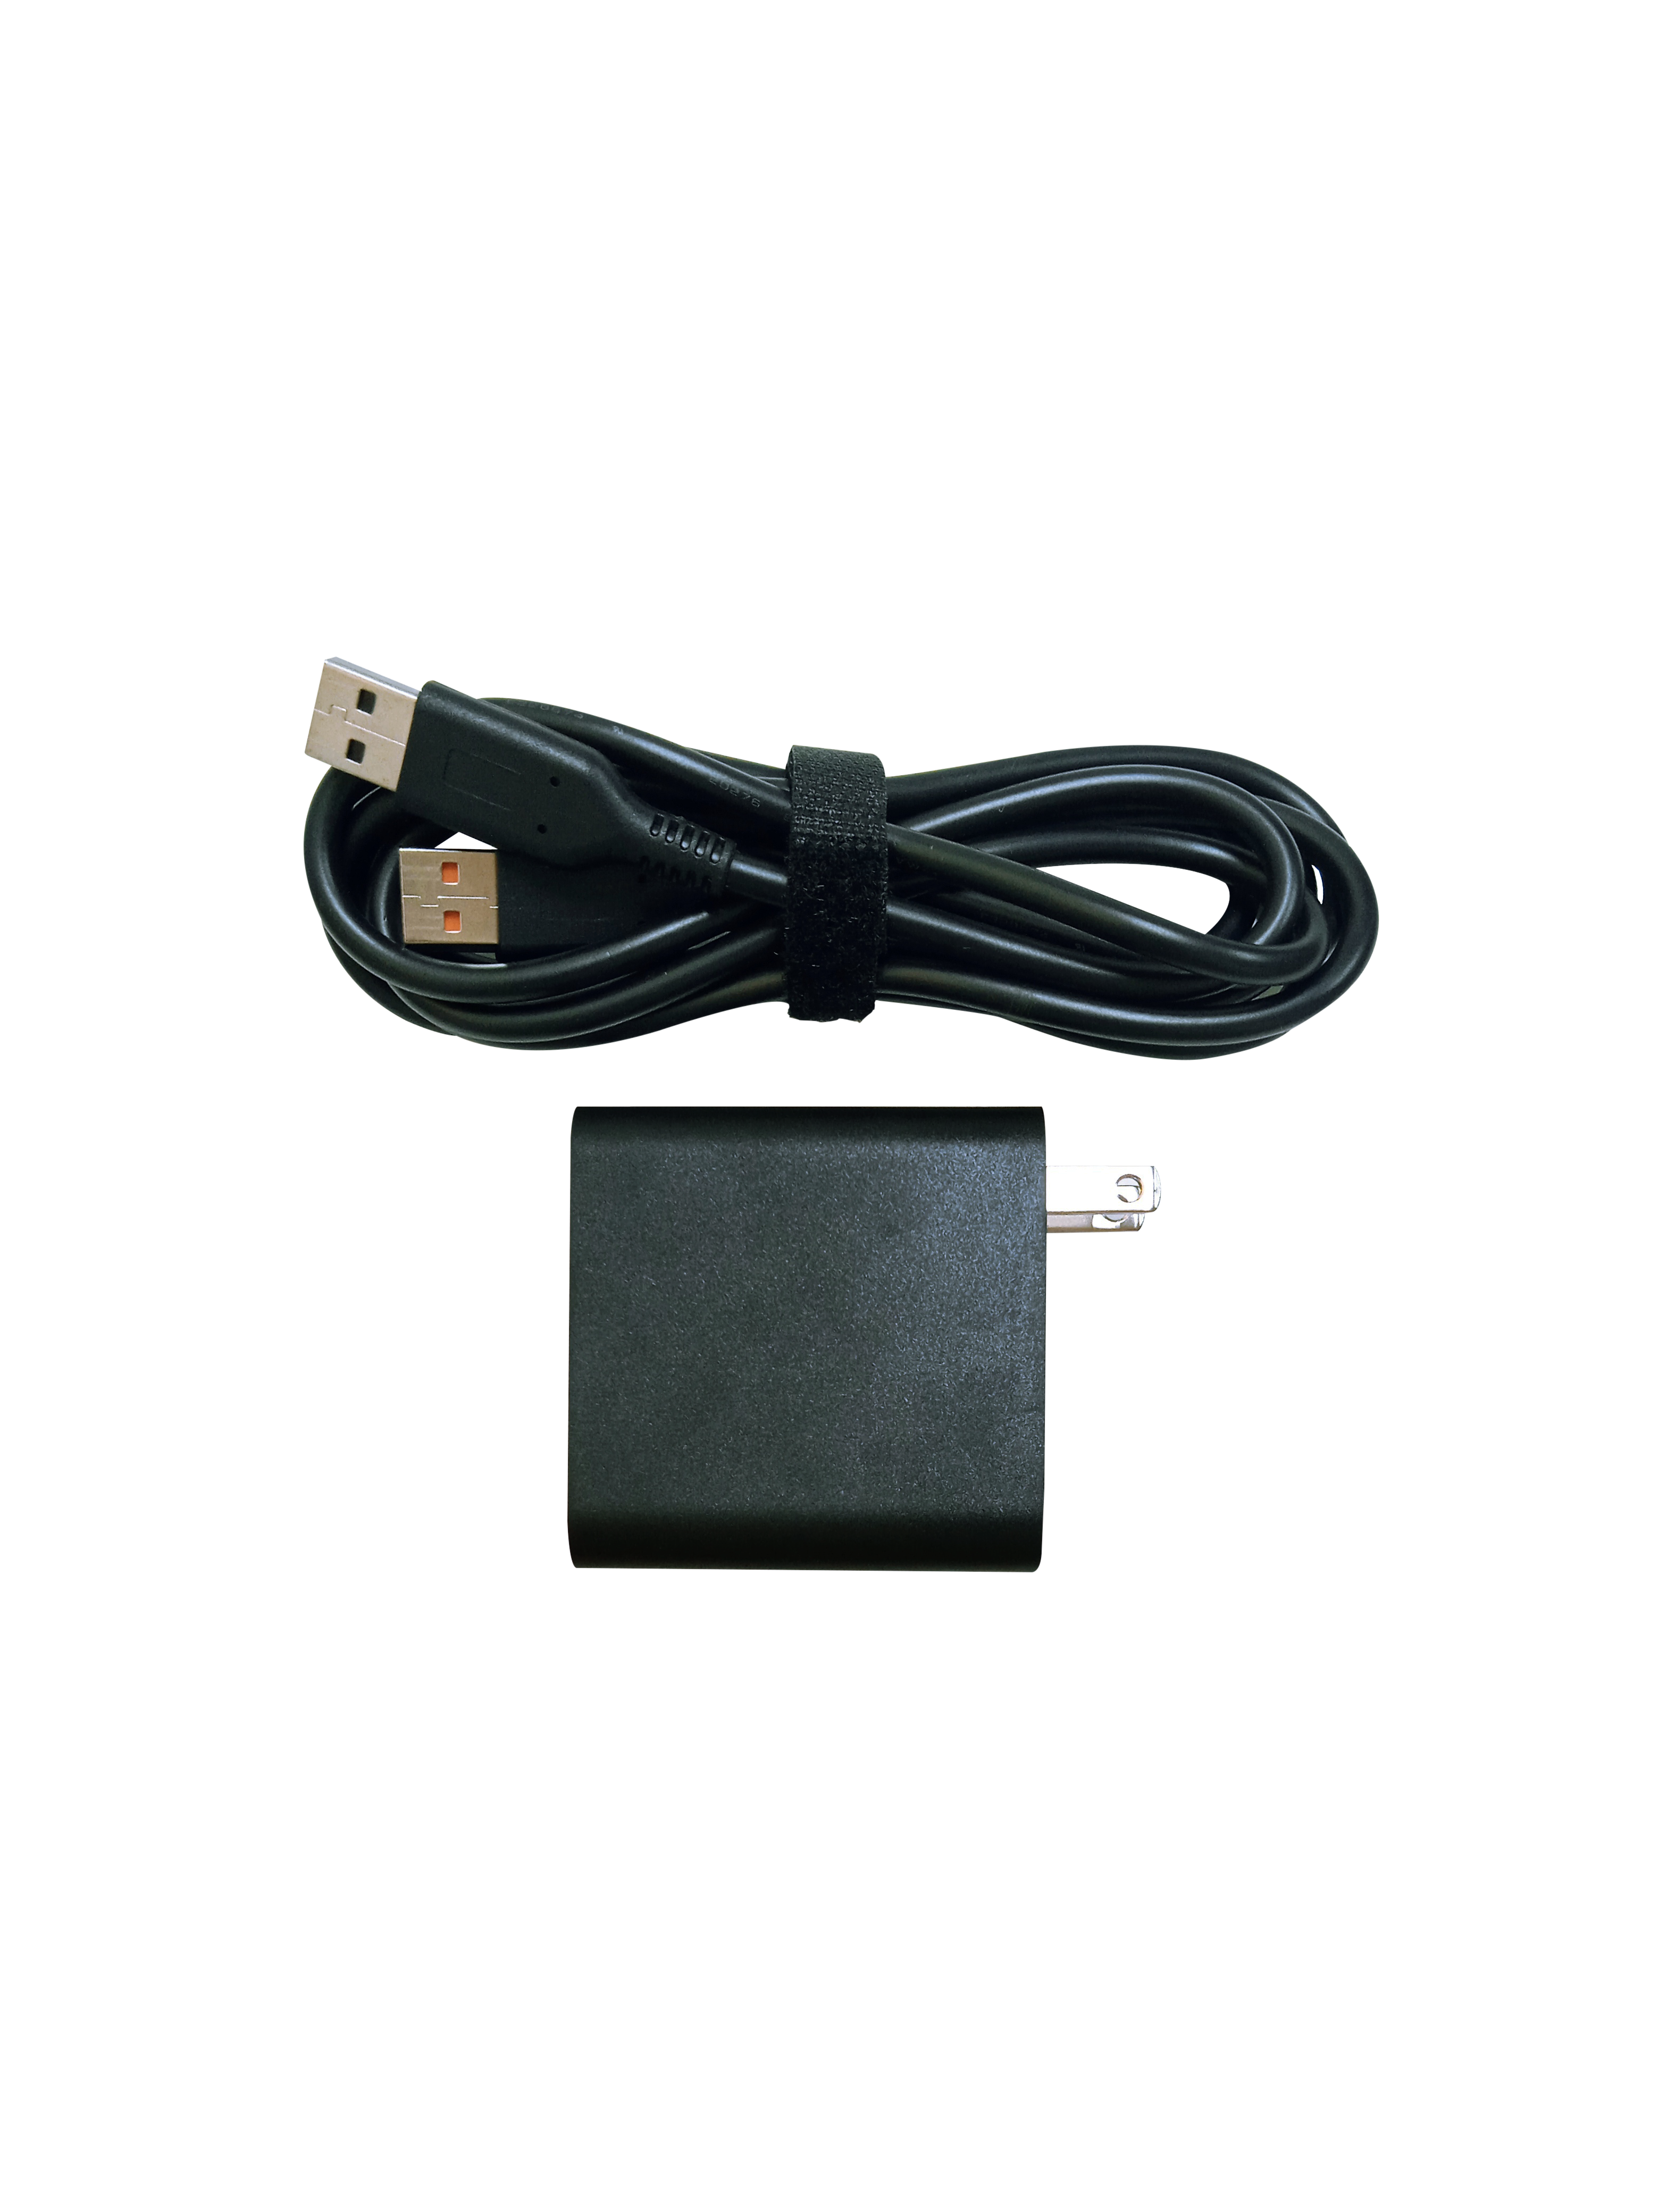 ADAPTADOR AC LAPTOP 20V, 2A, TIP SPECIAL USB, 40W   - GPA-0079-CPG